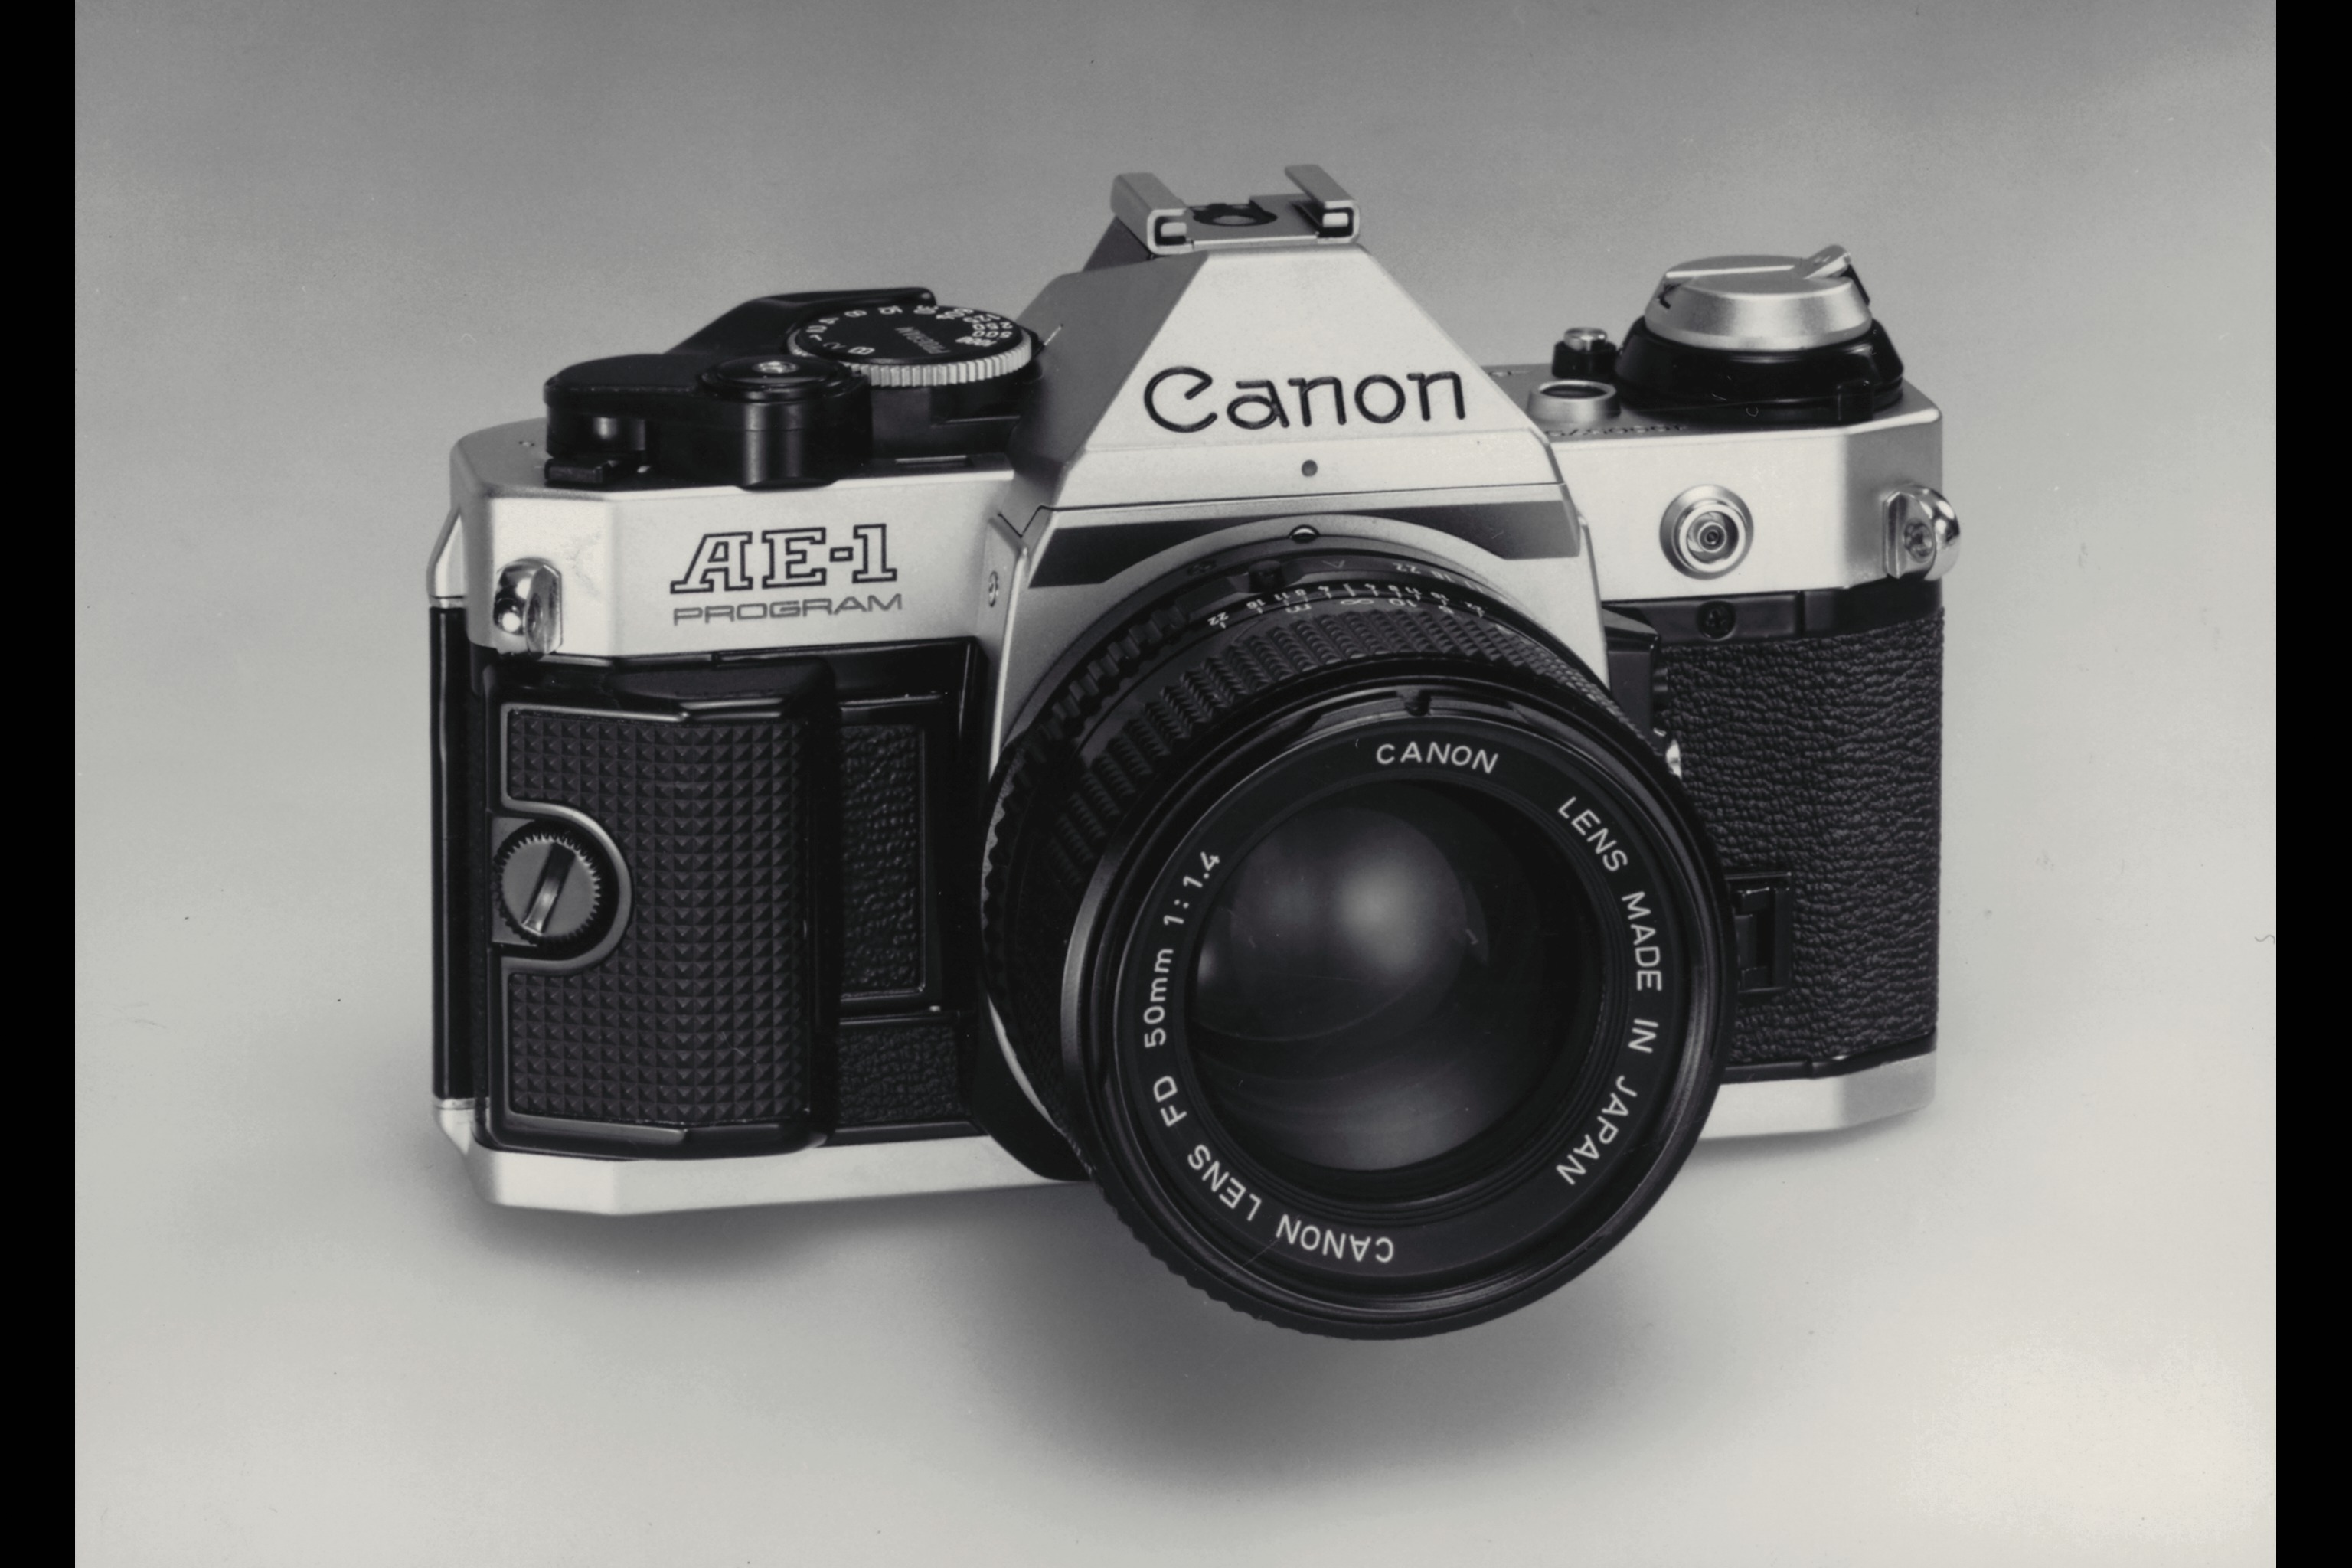  Canon celebra l’80º anniversario la prima fotocamera 35 mm Kwanon